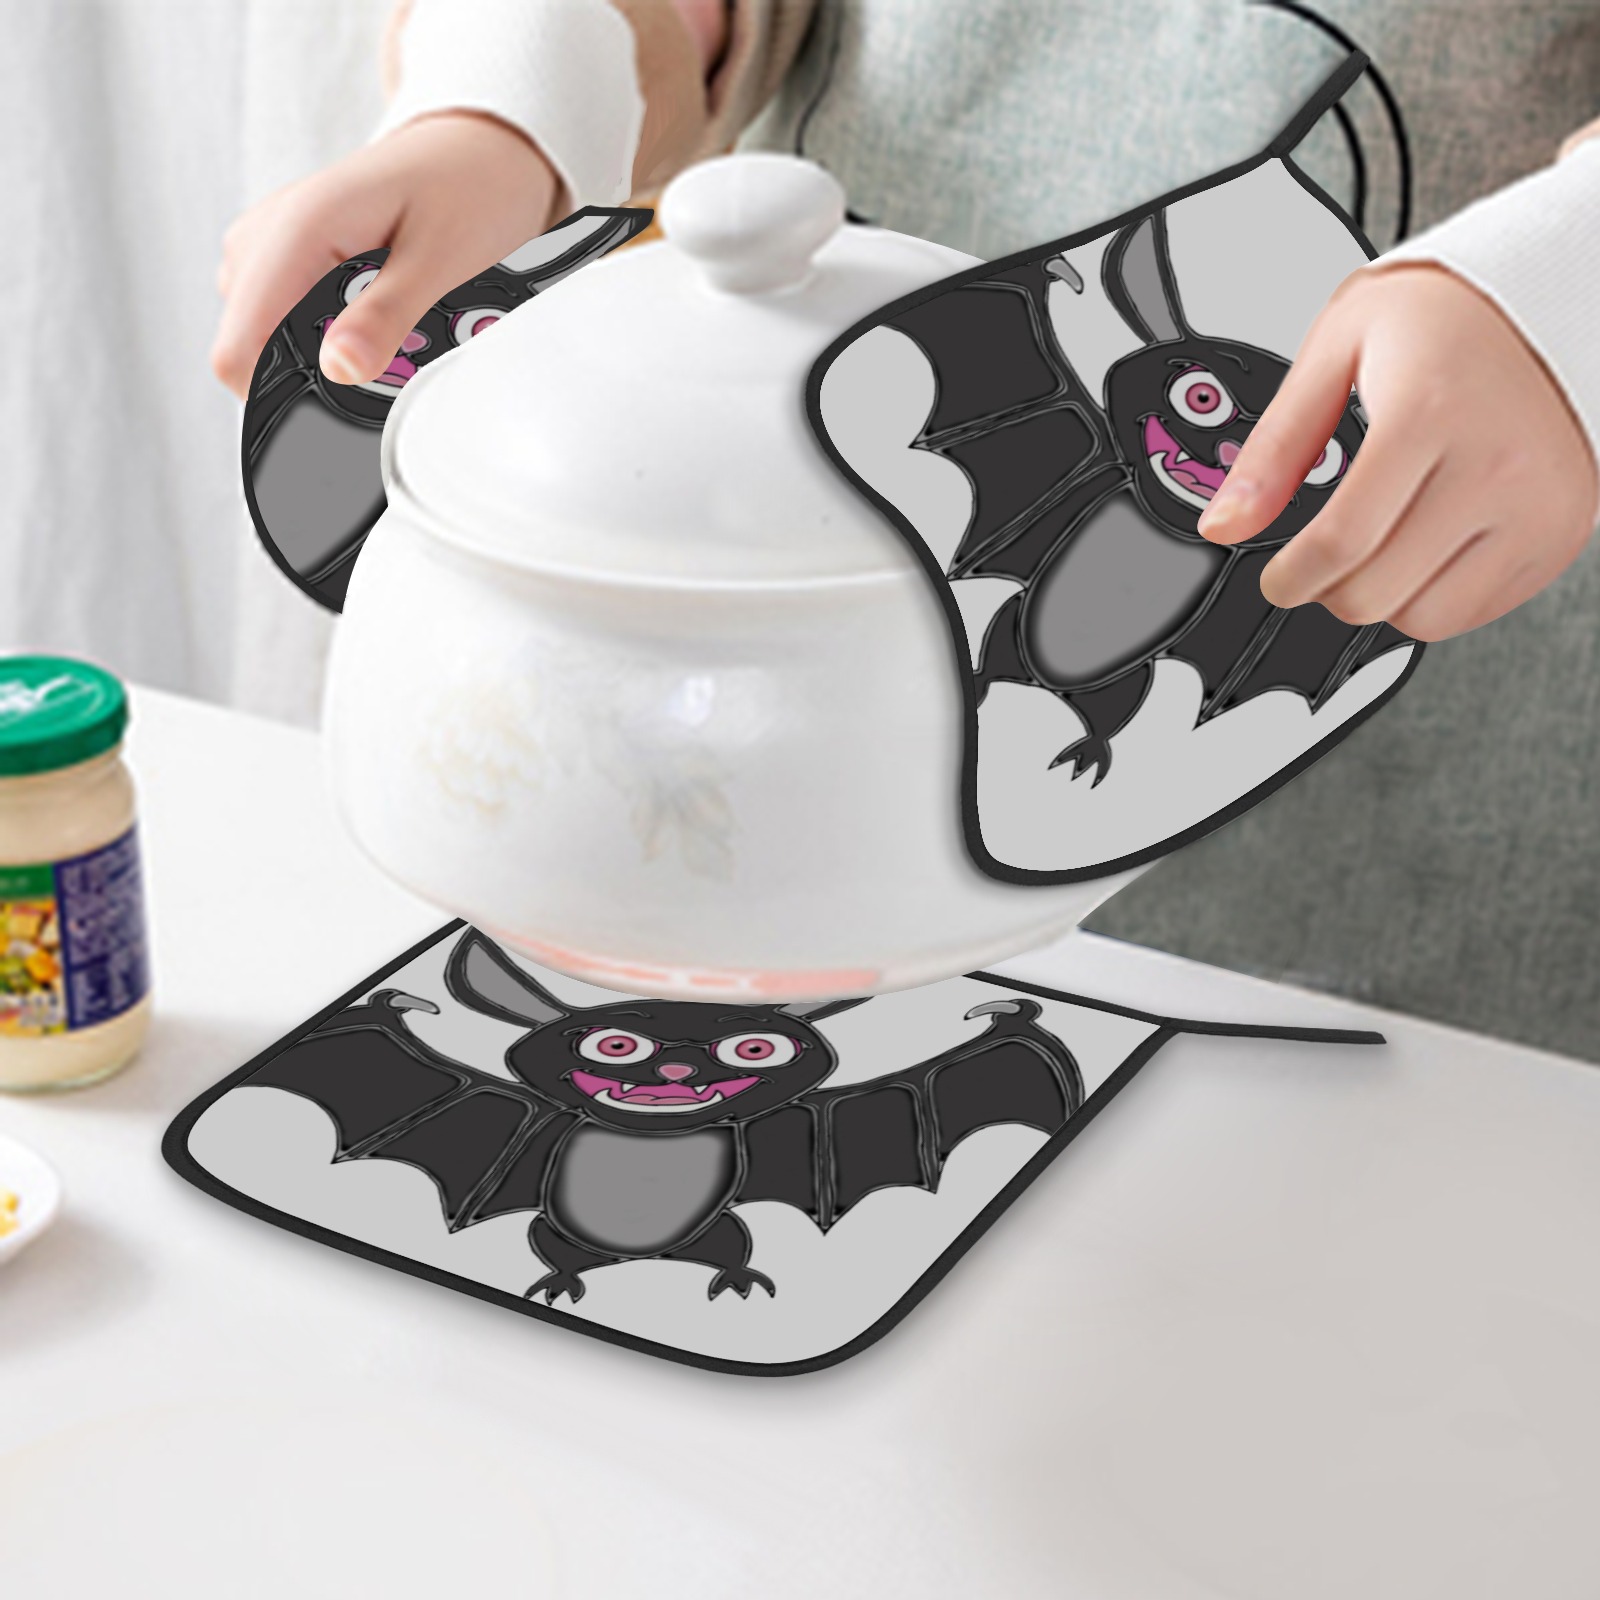 Cute Halloween Bat Pot Holder (2pcs)